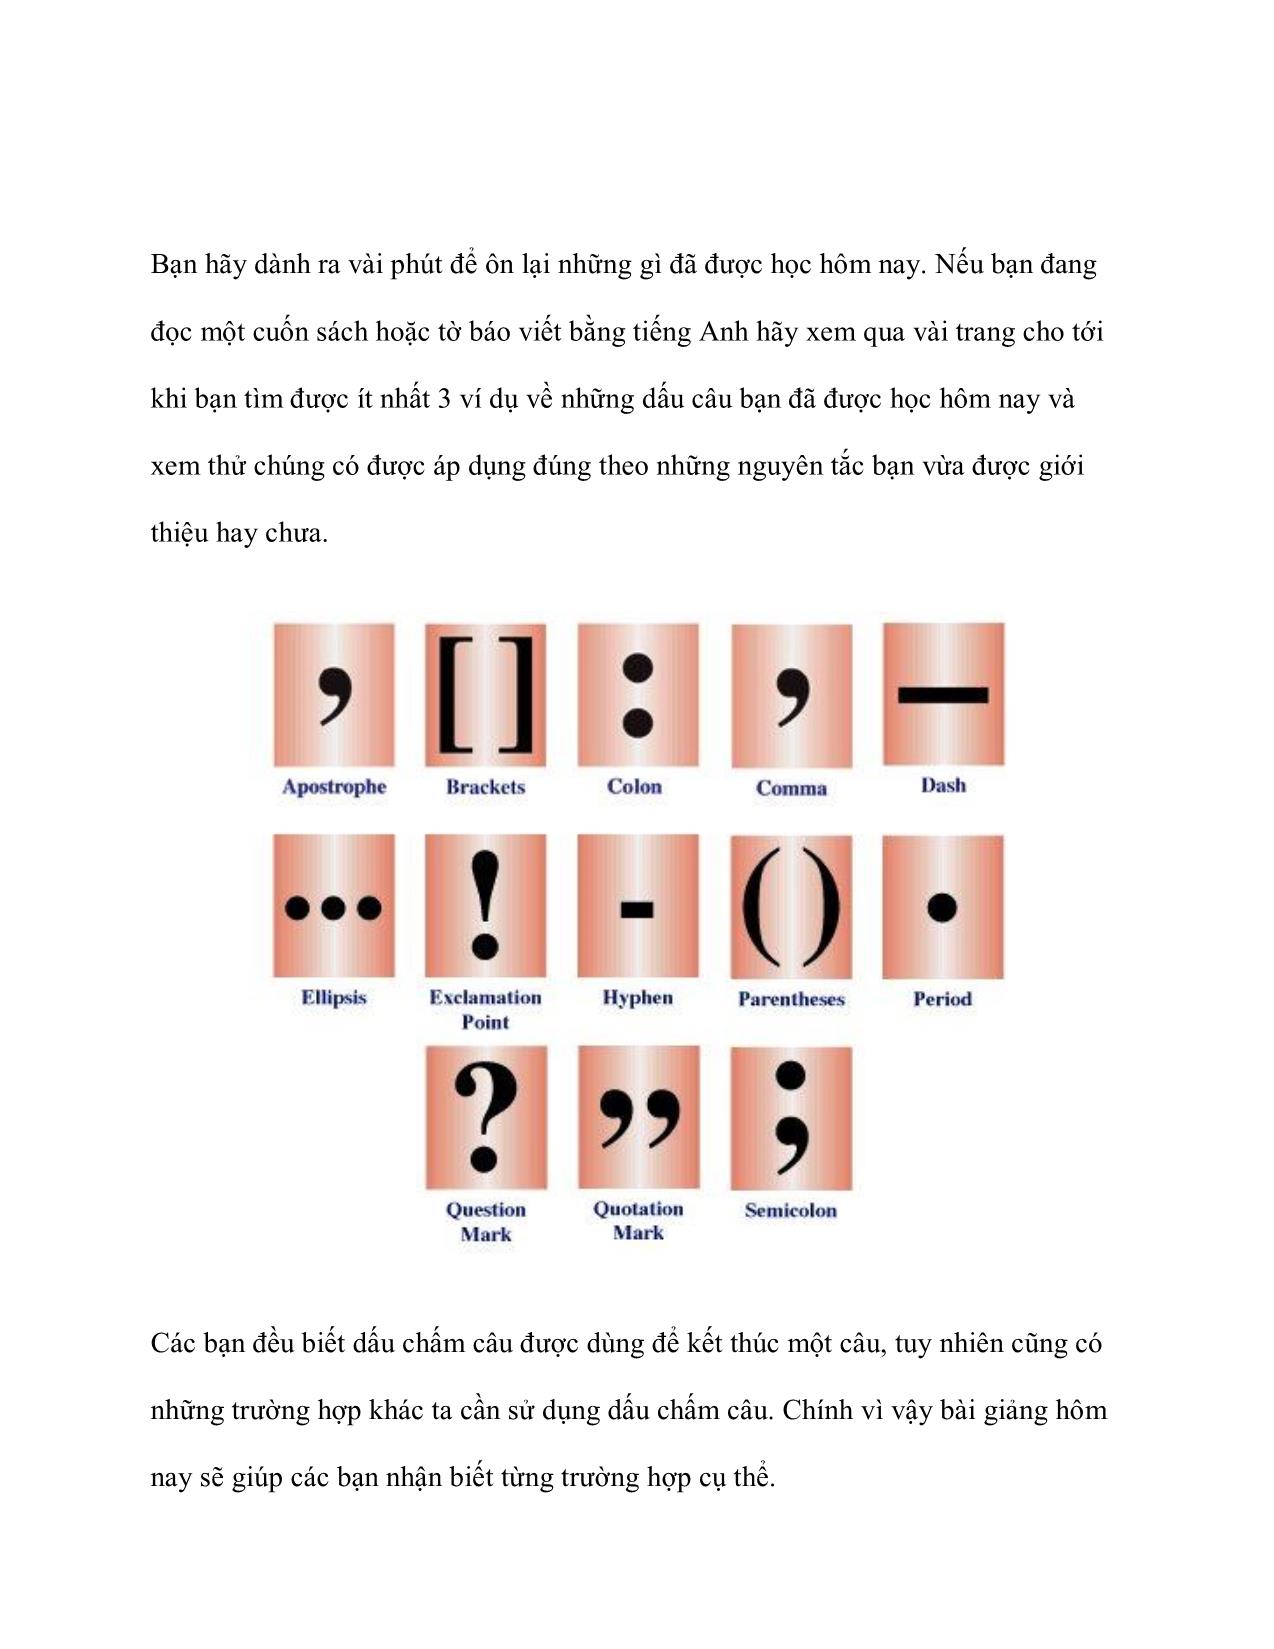 Cách dùng dấu câu trong Tiếng Anh trang 2